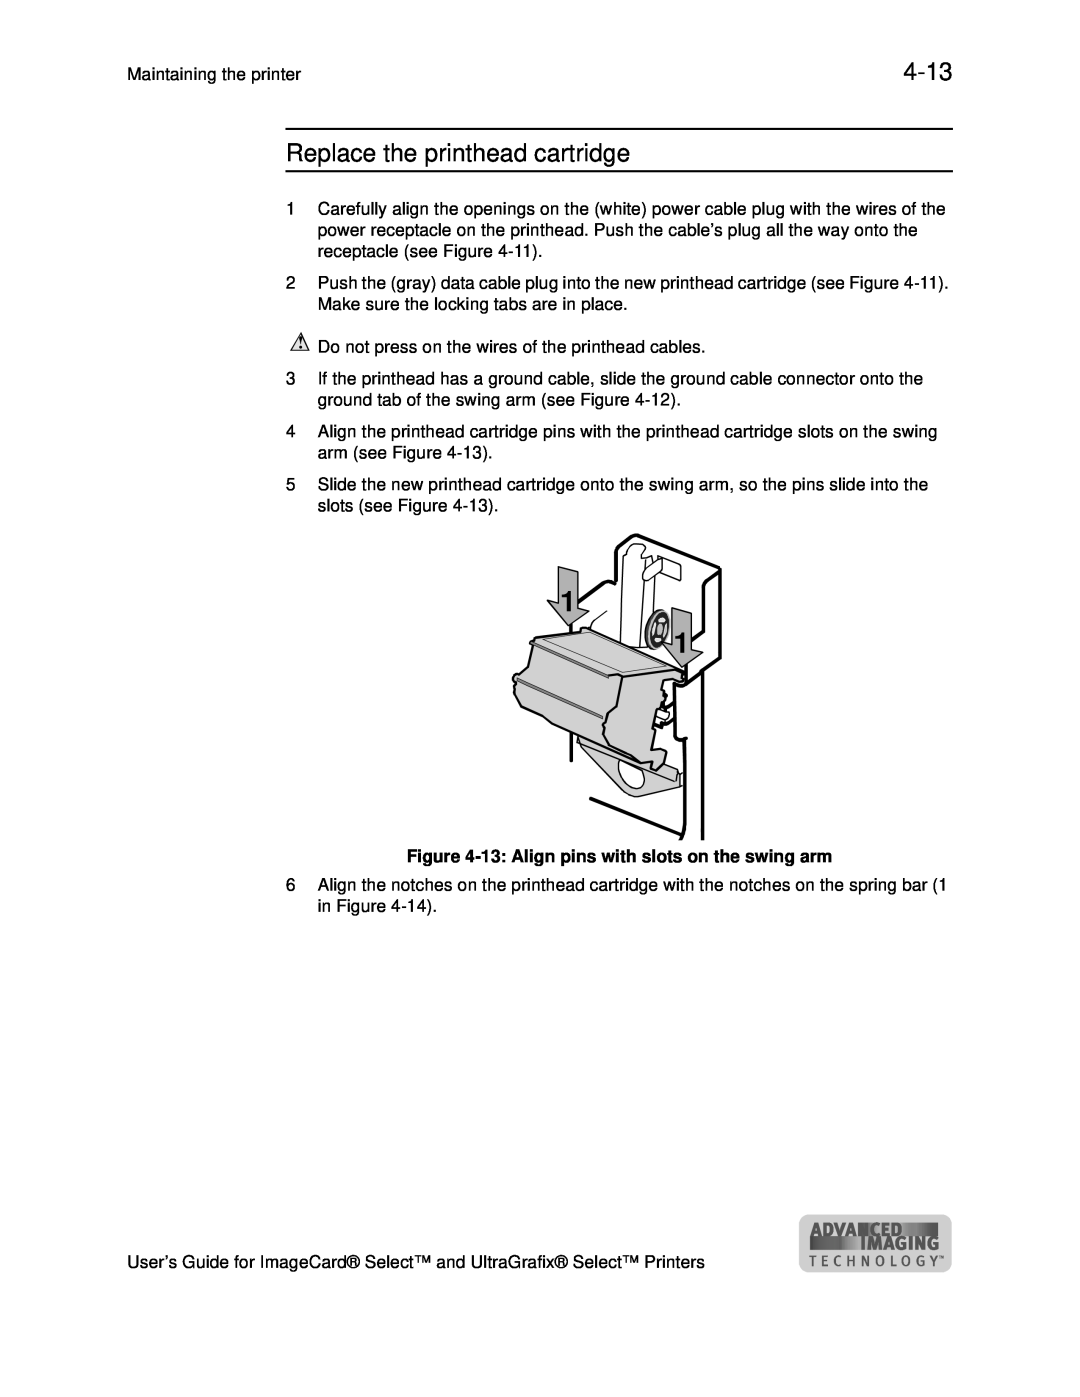 Datacard Group ImageCard SelectTM and UltraGrafix SelectTM Printers manual 4-13, Replace the printhead cartridge 